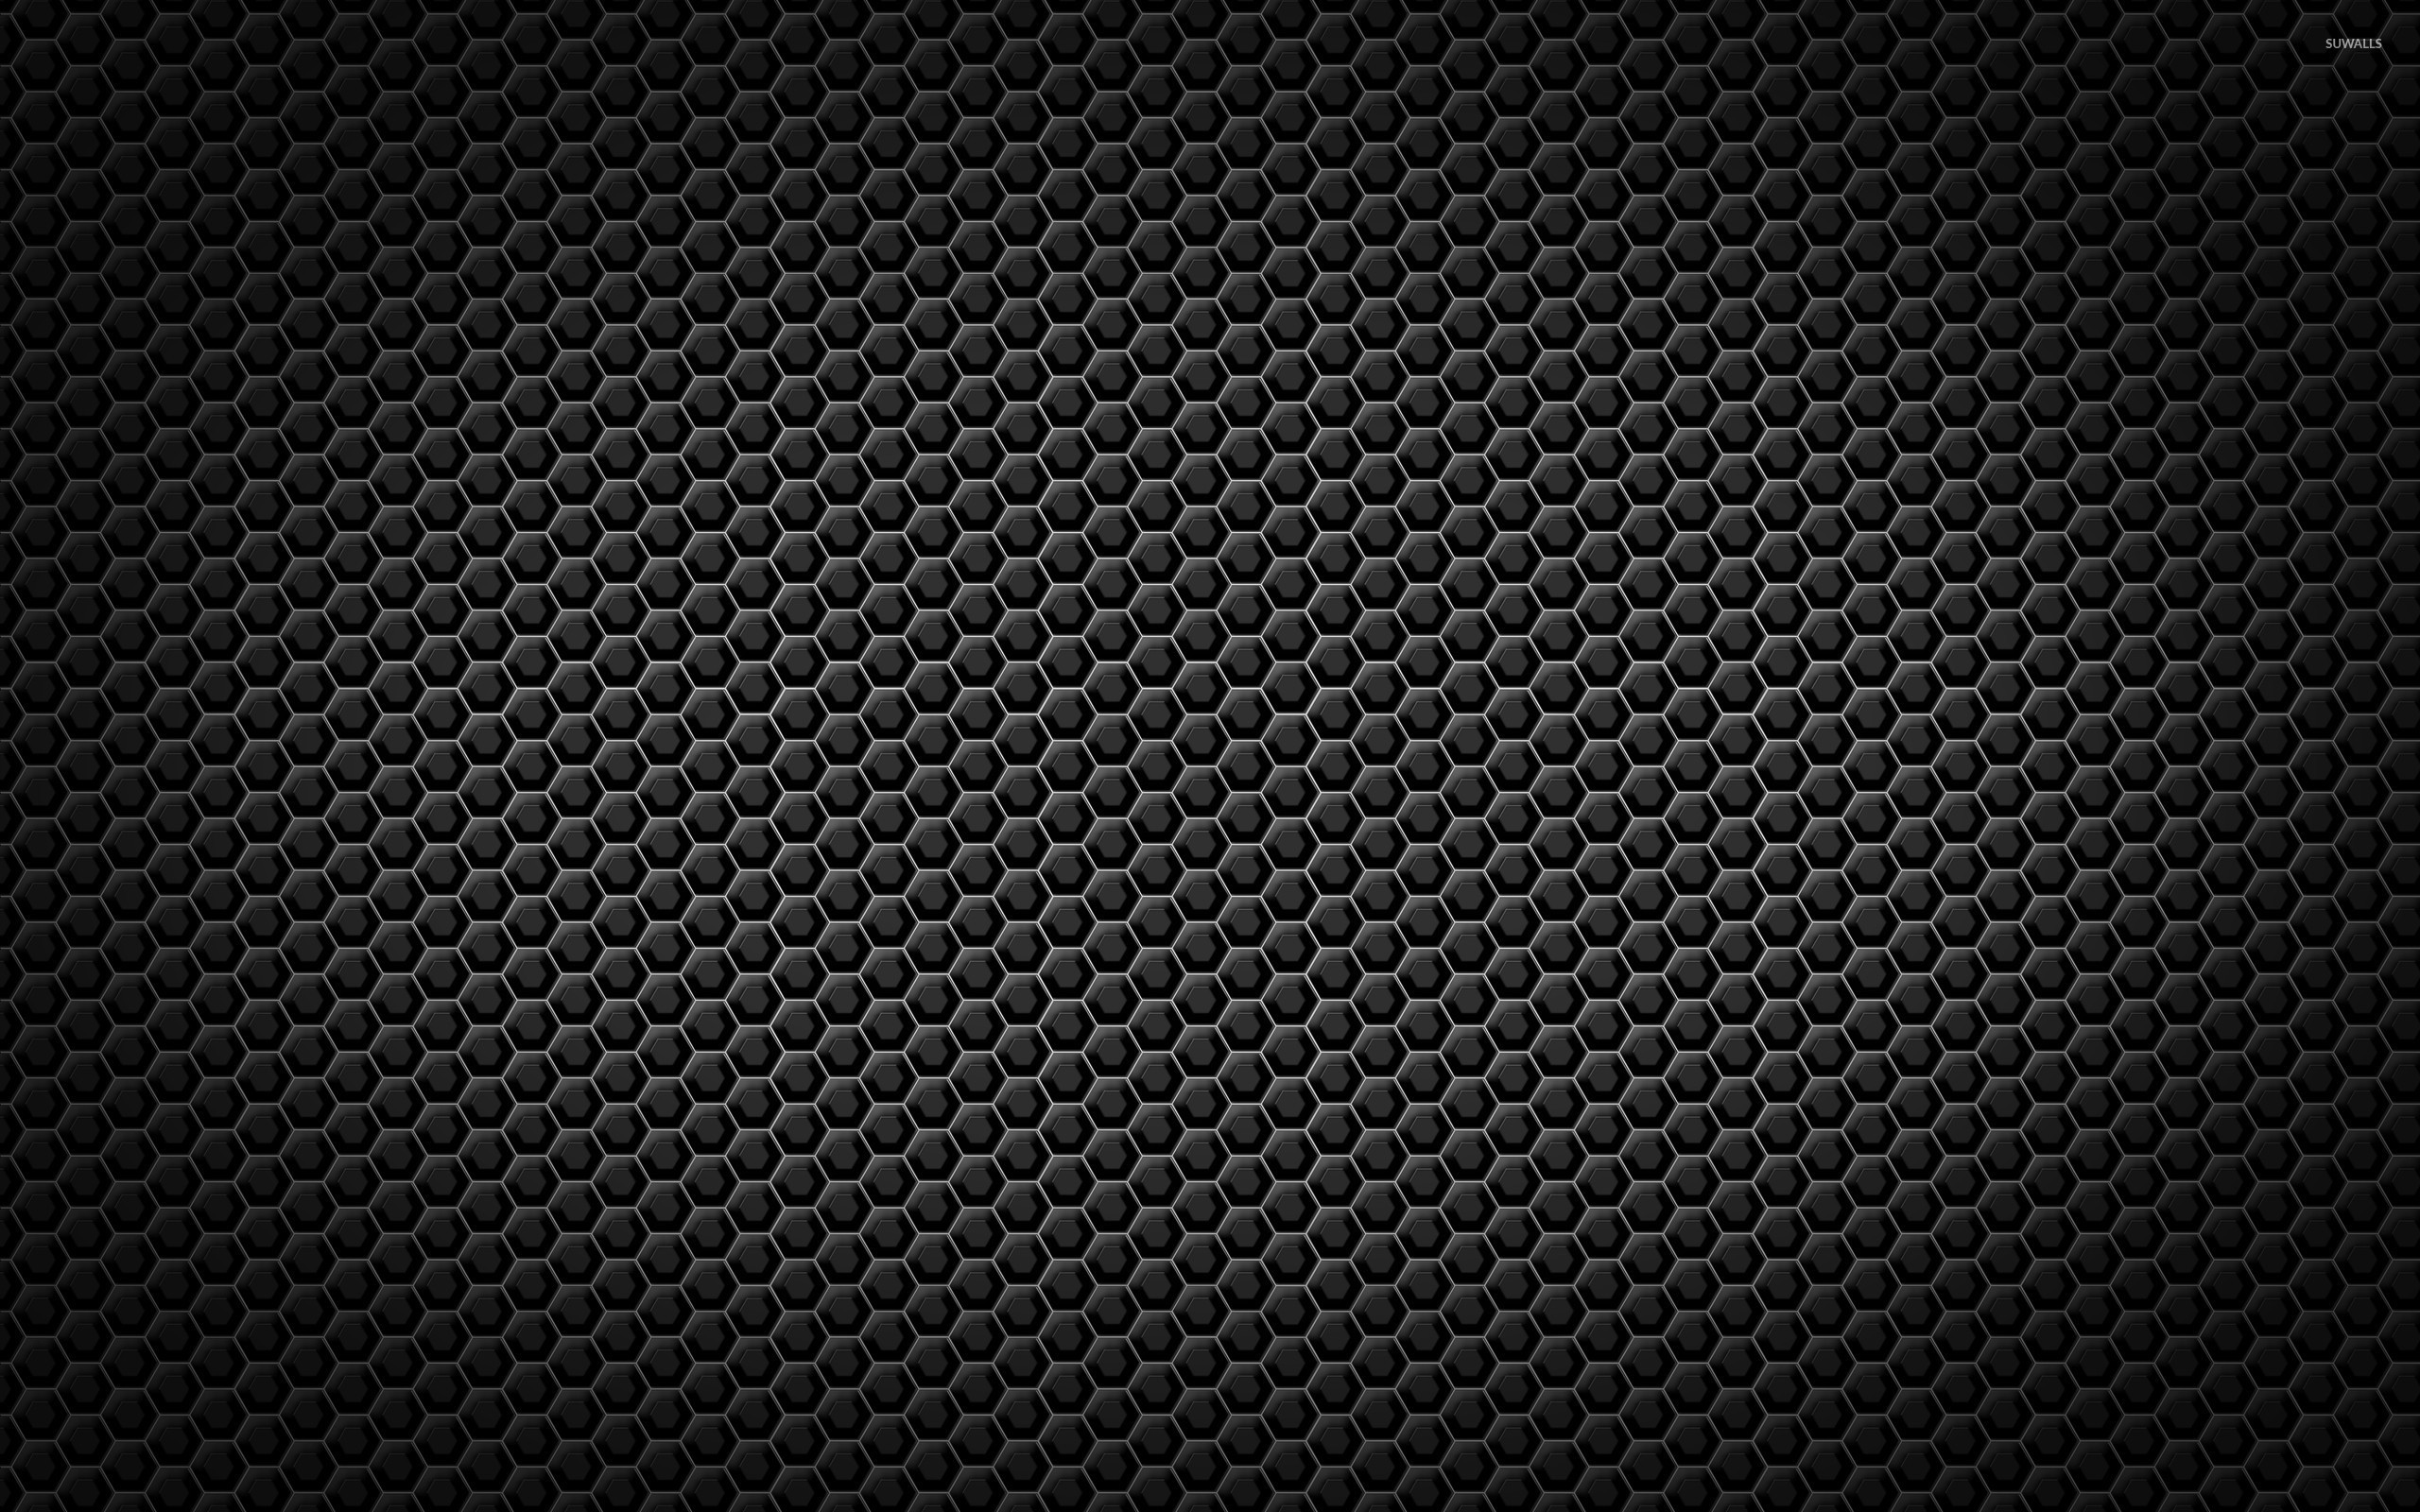 Black Honeycomb Wallpaper - WallpaperSafari